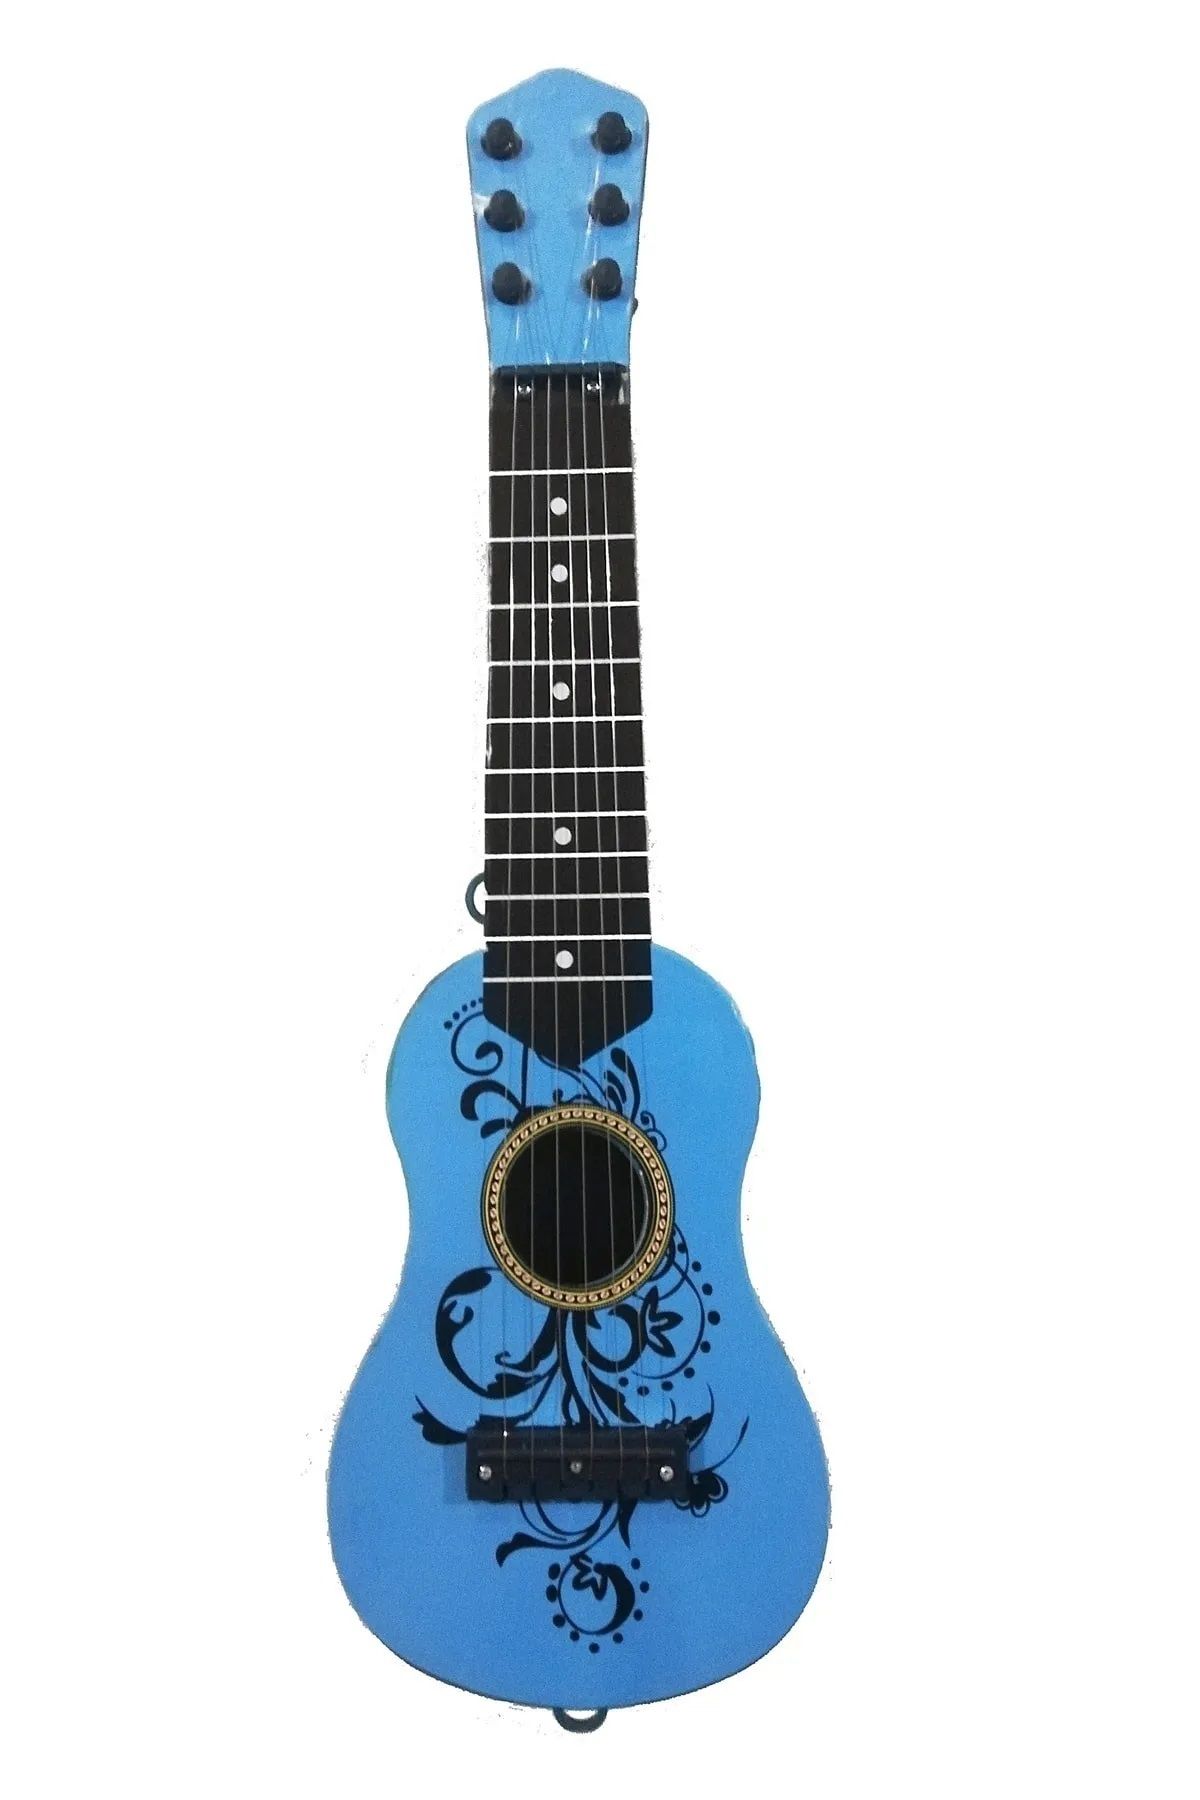 Brother Toys 48 Cm. Oyuncak Mavi Ispanyol Çocuk Gitarı 23 Nisan Okul Gösterisi Gitarı